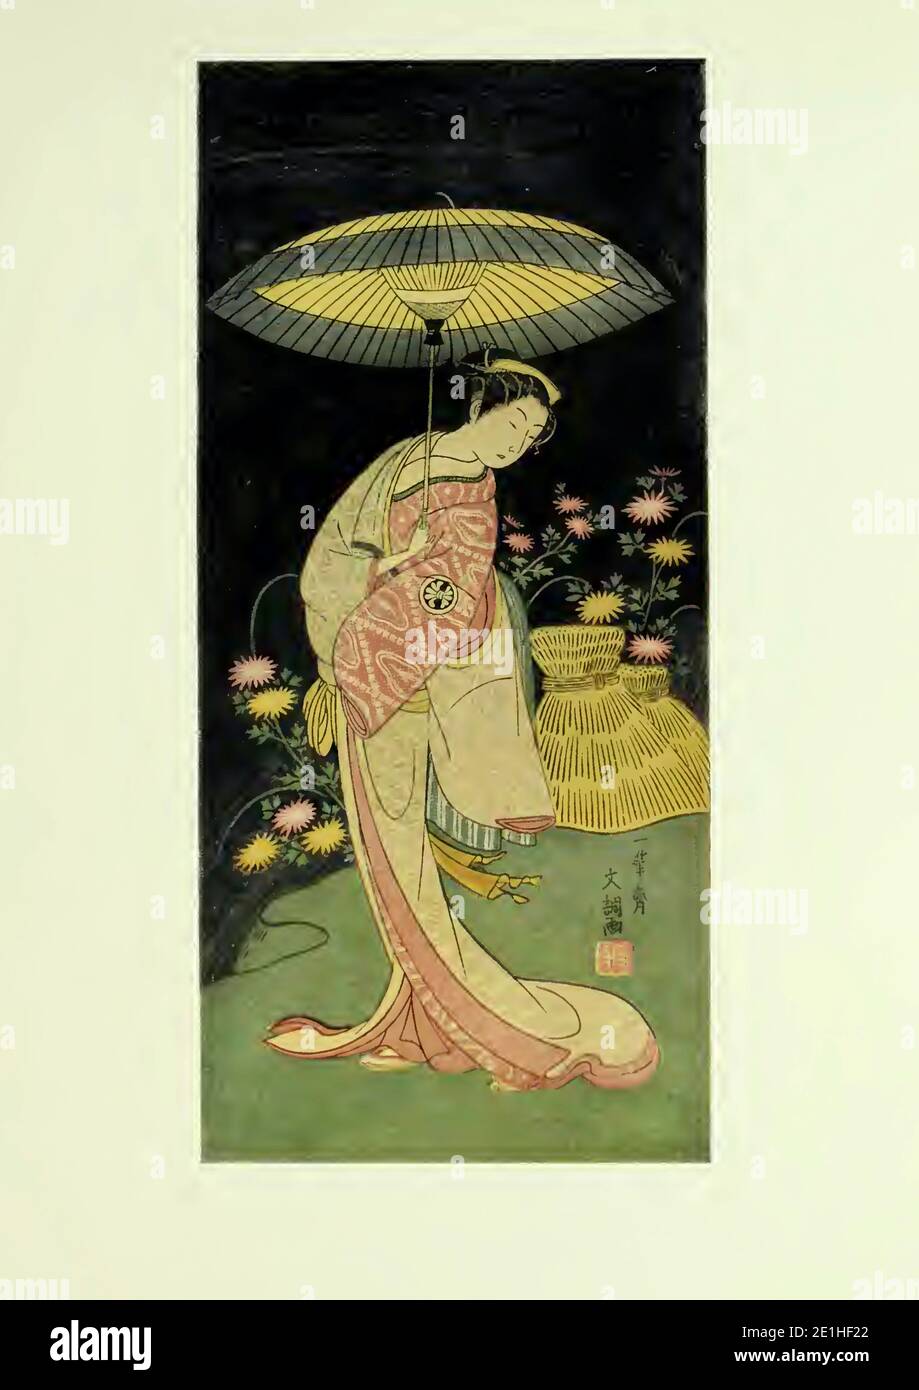 Una ragazza in piedi su una banca sotto un ombrello aperto su una notte oscura; UN grappolo di Astri in background - circa 1769 - Ippitsudai Buncho Foto Stock